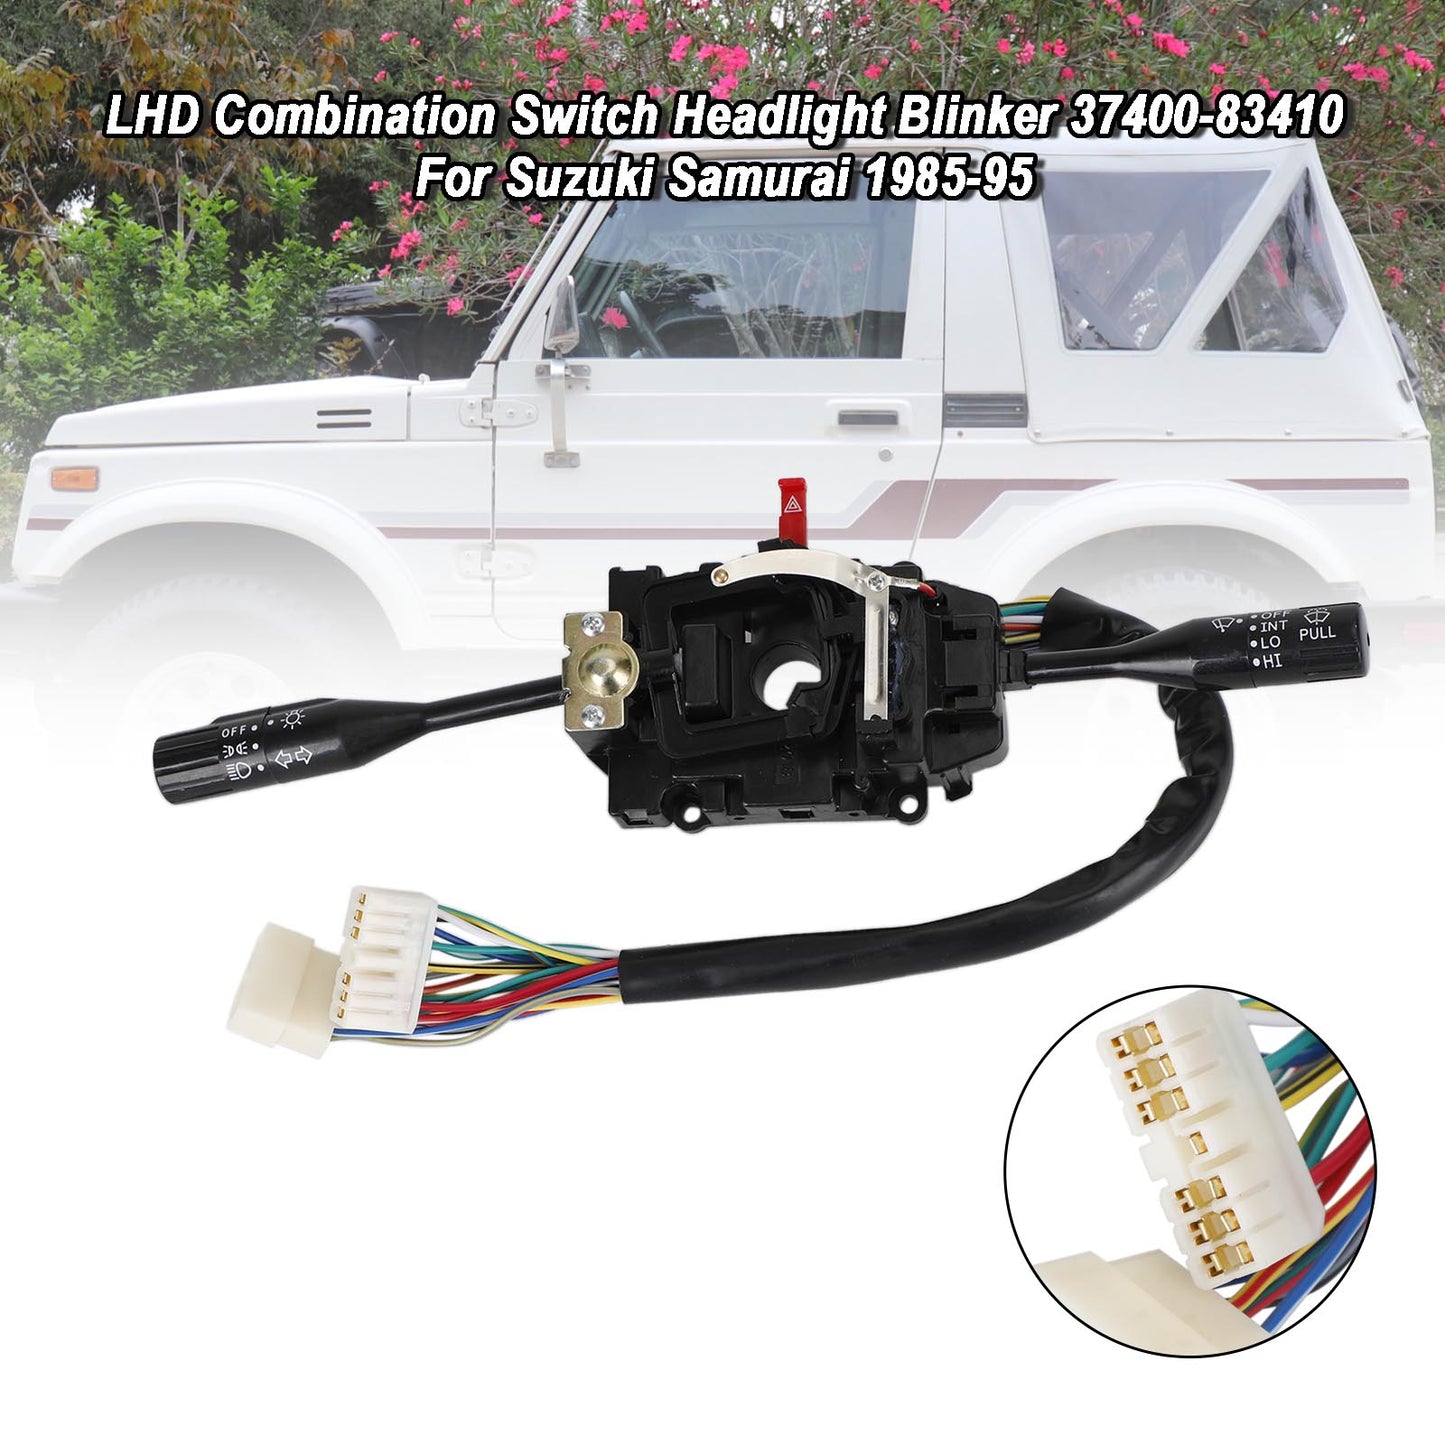 Suzuki Samurai 1985-1995 LHD Kombinationsschalter Scheinwerfer Blinker 37400-83410